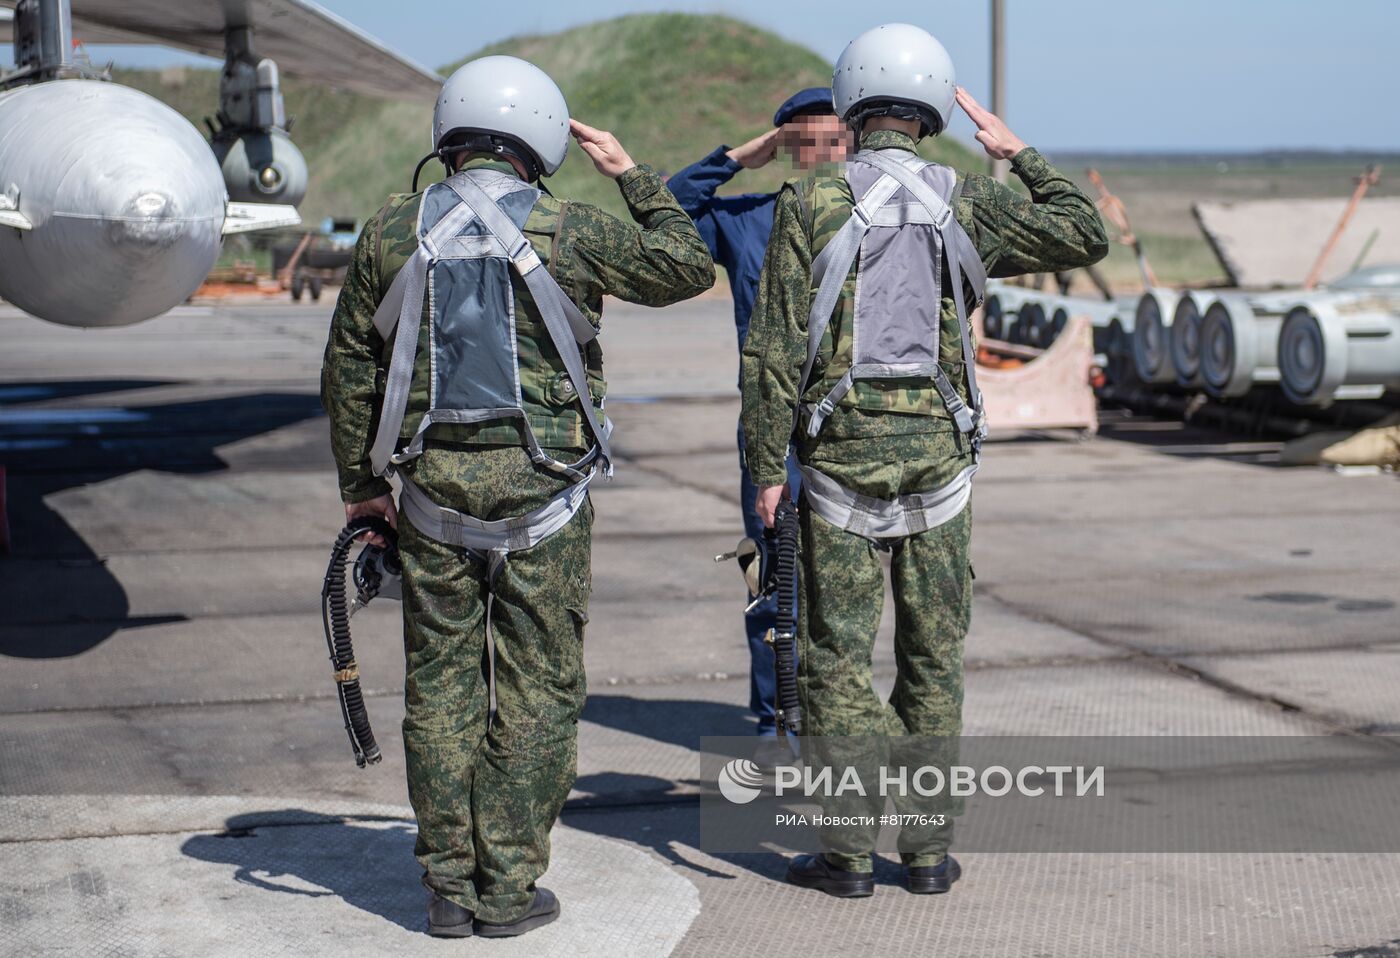 Авиация ВКС РФ готовится к боевым вылетам